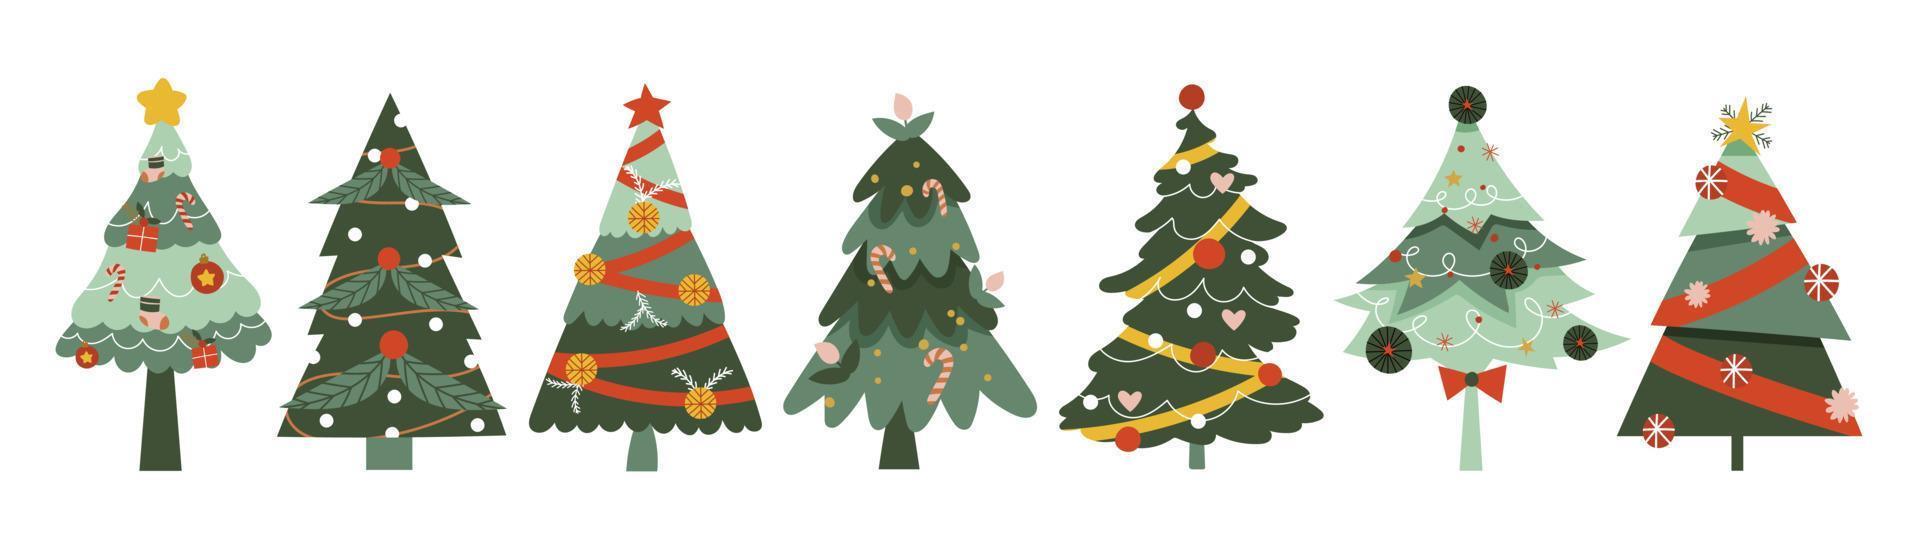 reeks van hand- getrokken decoratief Kerstmis bomen vector illustratie. elementen van sier- ballen, guirlande, ster, kerstballen, hulst, pijnboom bladeren. ontwerp voor kaart, grappig, afdrukken, poster, banier, decoratie.